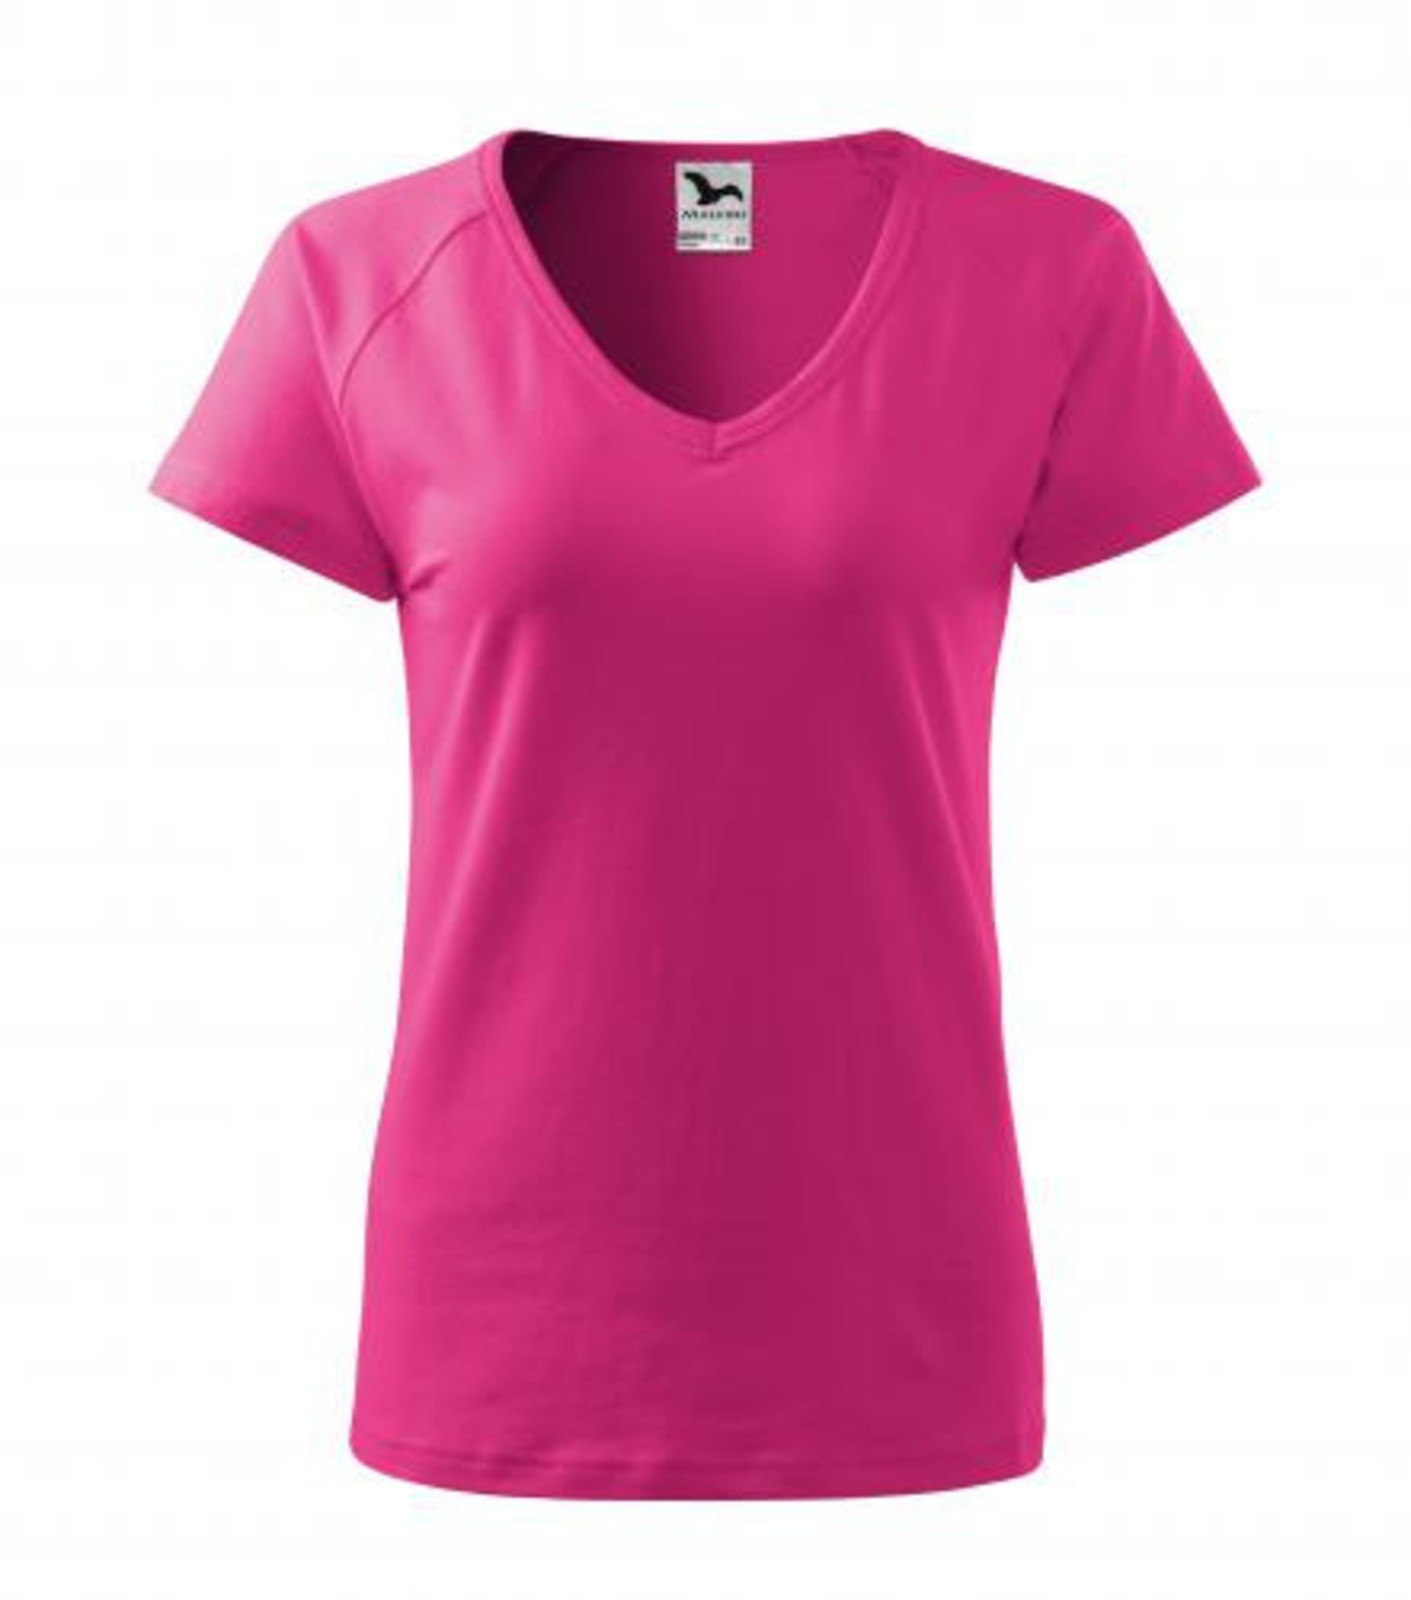 Dámske tričko s V výstrihom Adler Dream 128 - veľkosť: M, farba: purpurová